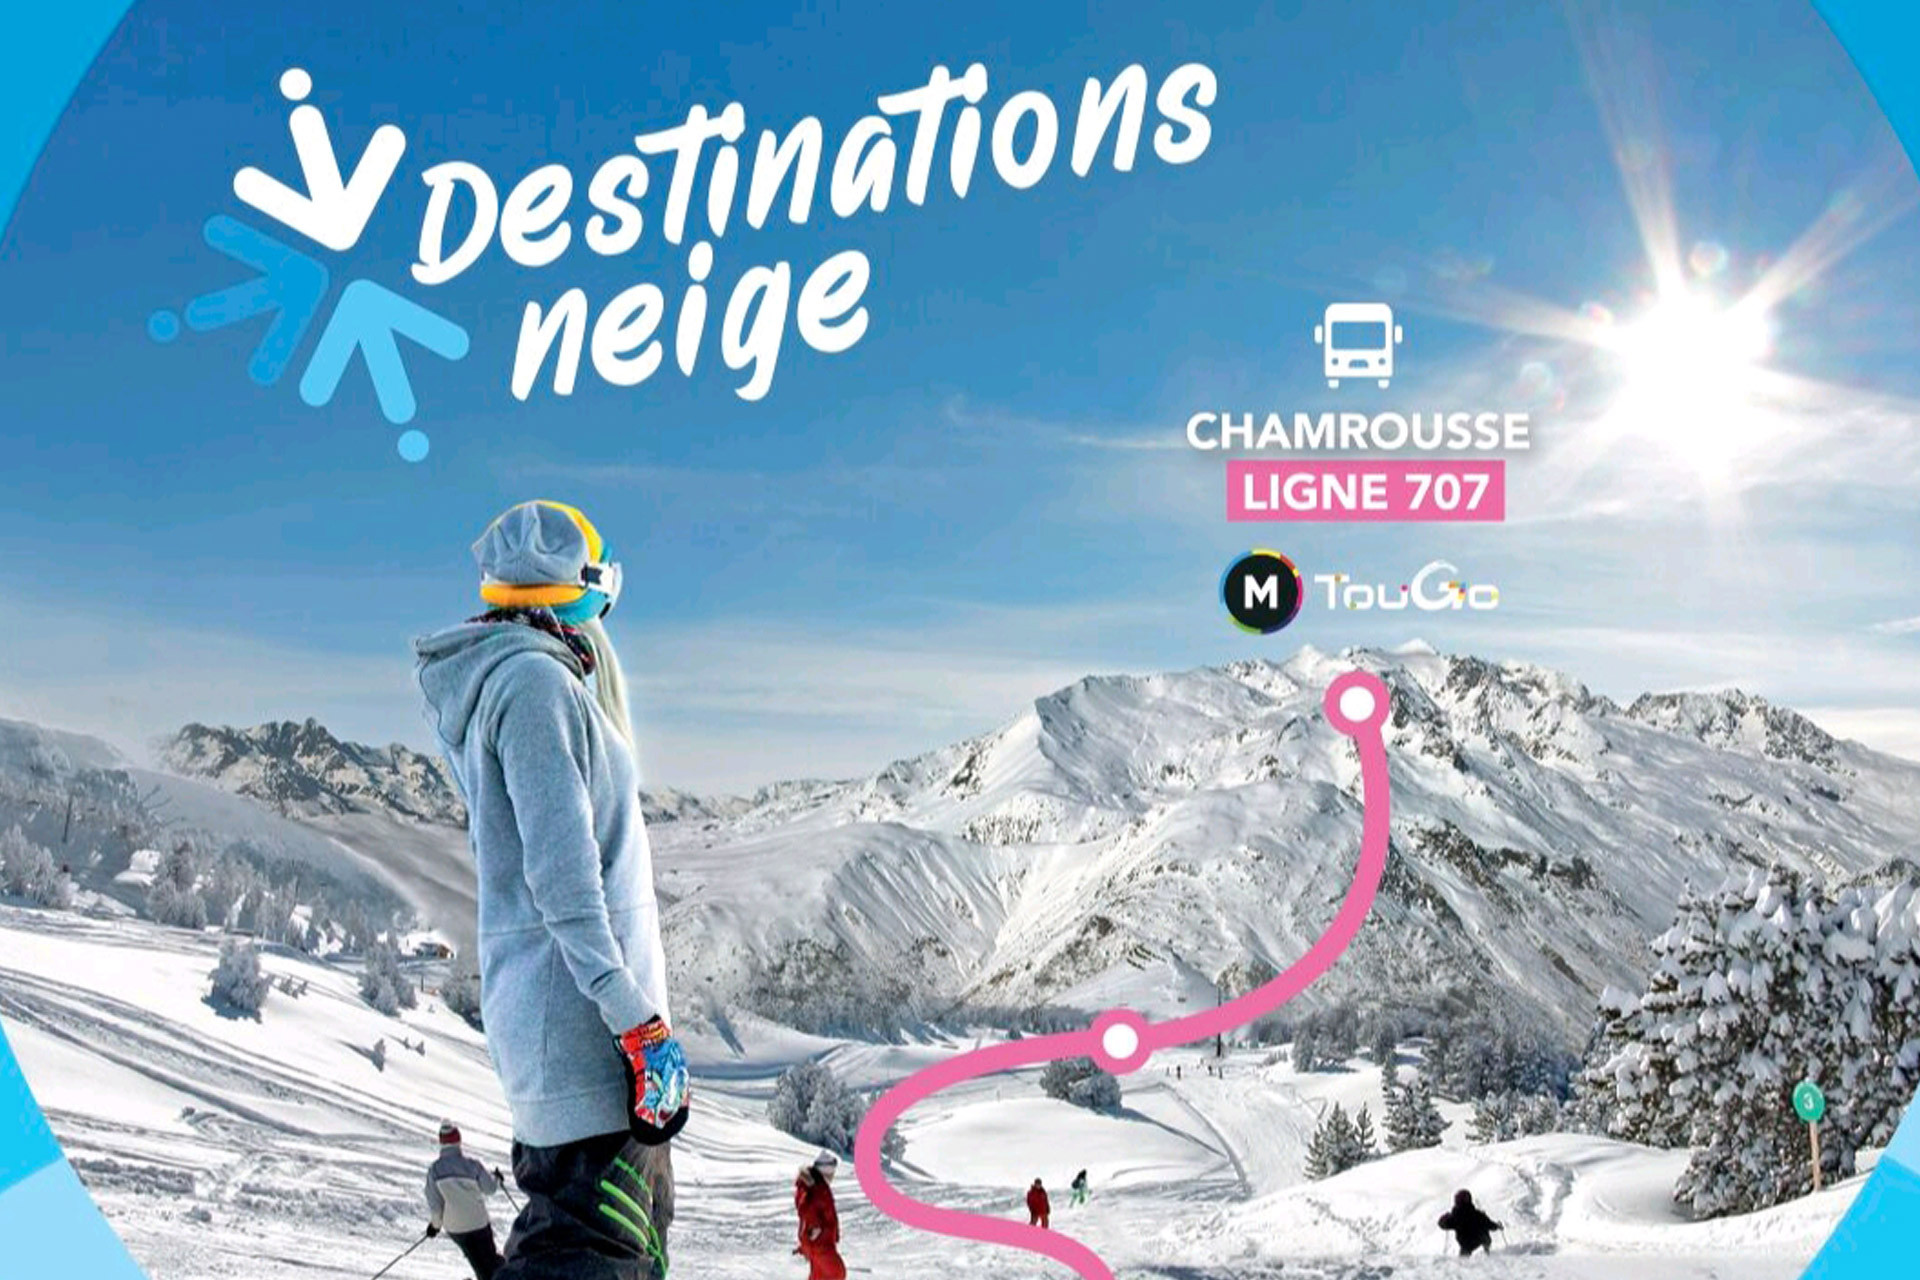 Ski bus line 707 Grenoble - Chamrousse